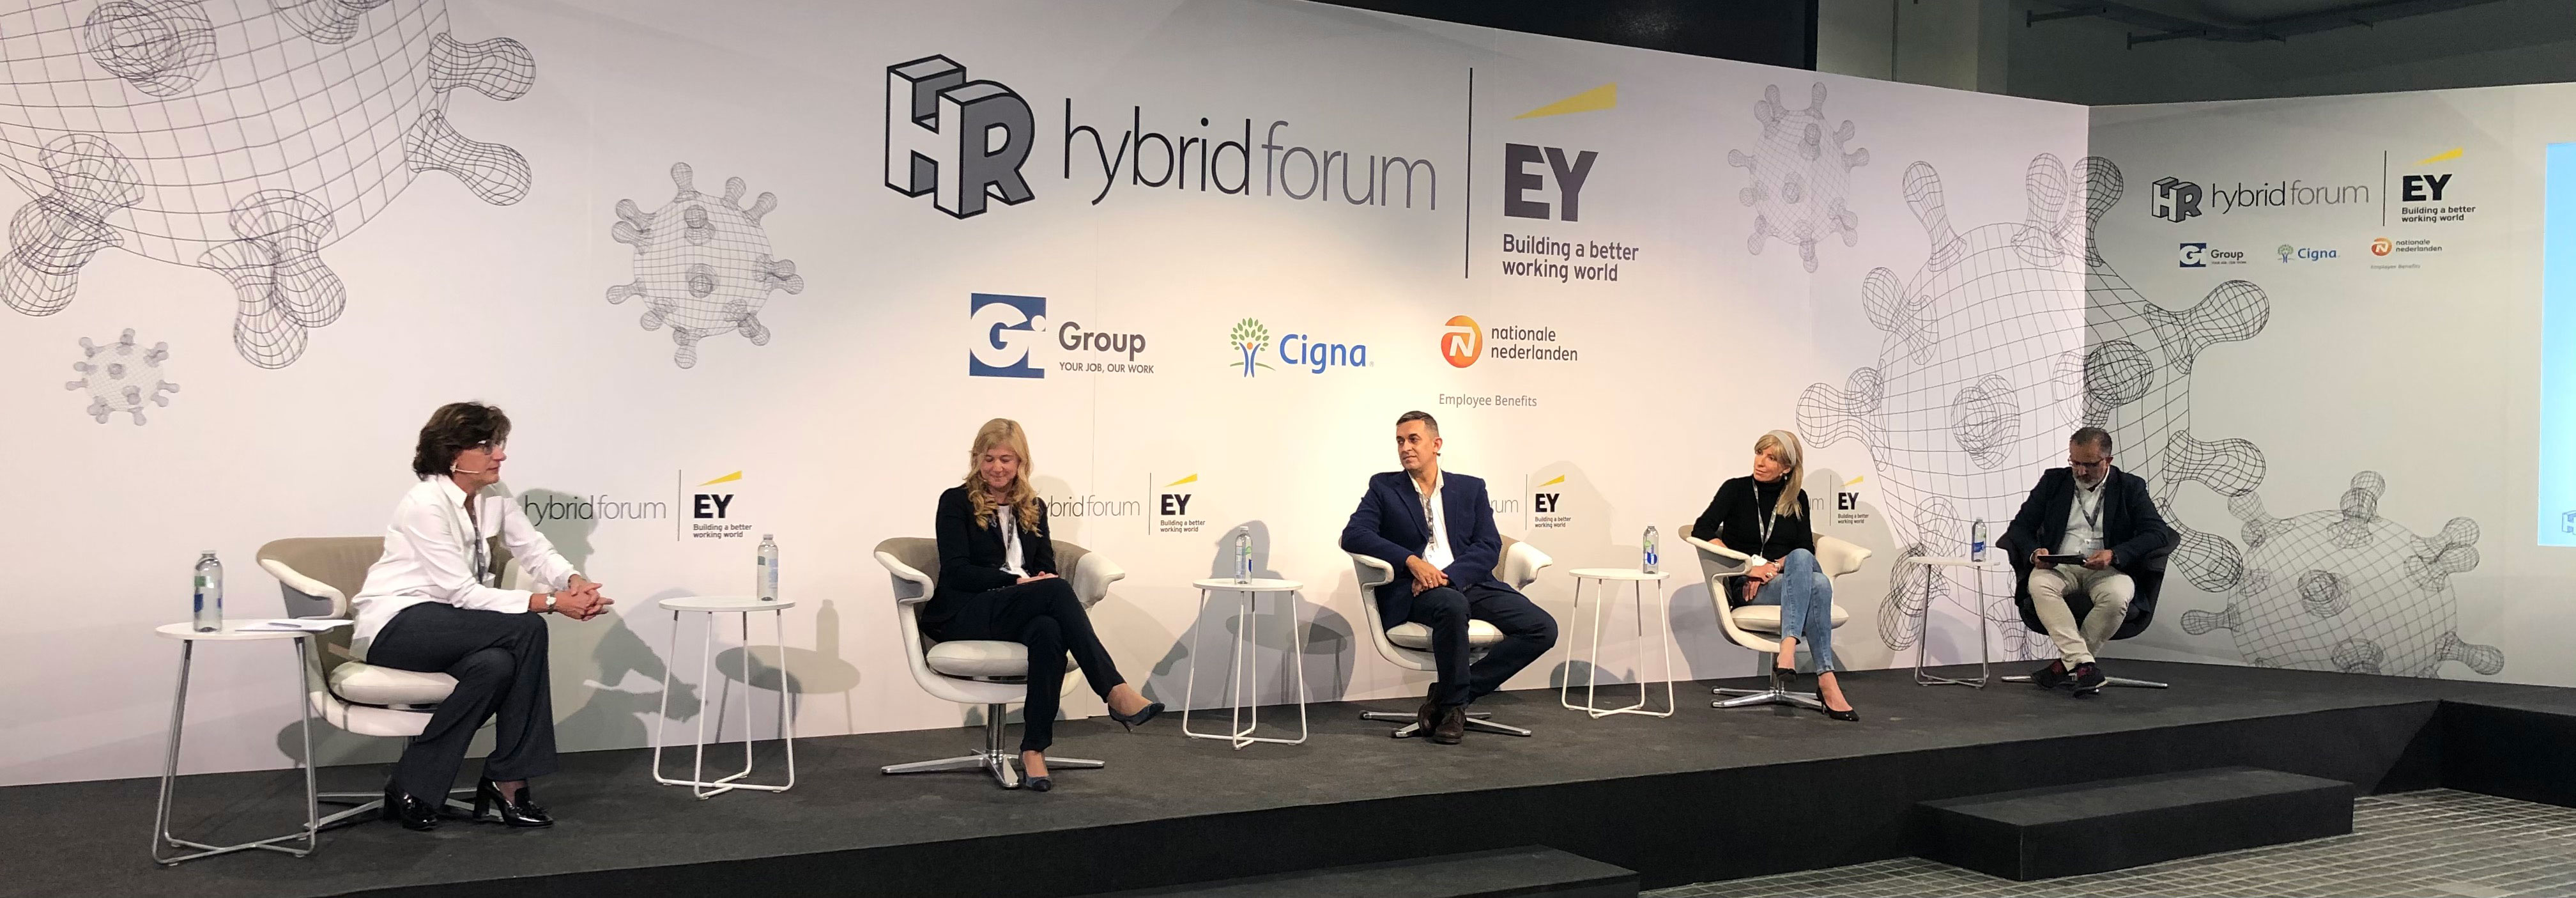 Más de 40 expertos en el sector de los RRHH y mundo empresarial analizaron las tendencias de la nueva realidad en el HR Hybrid Forum